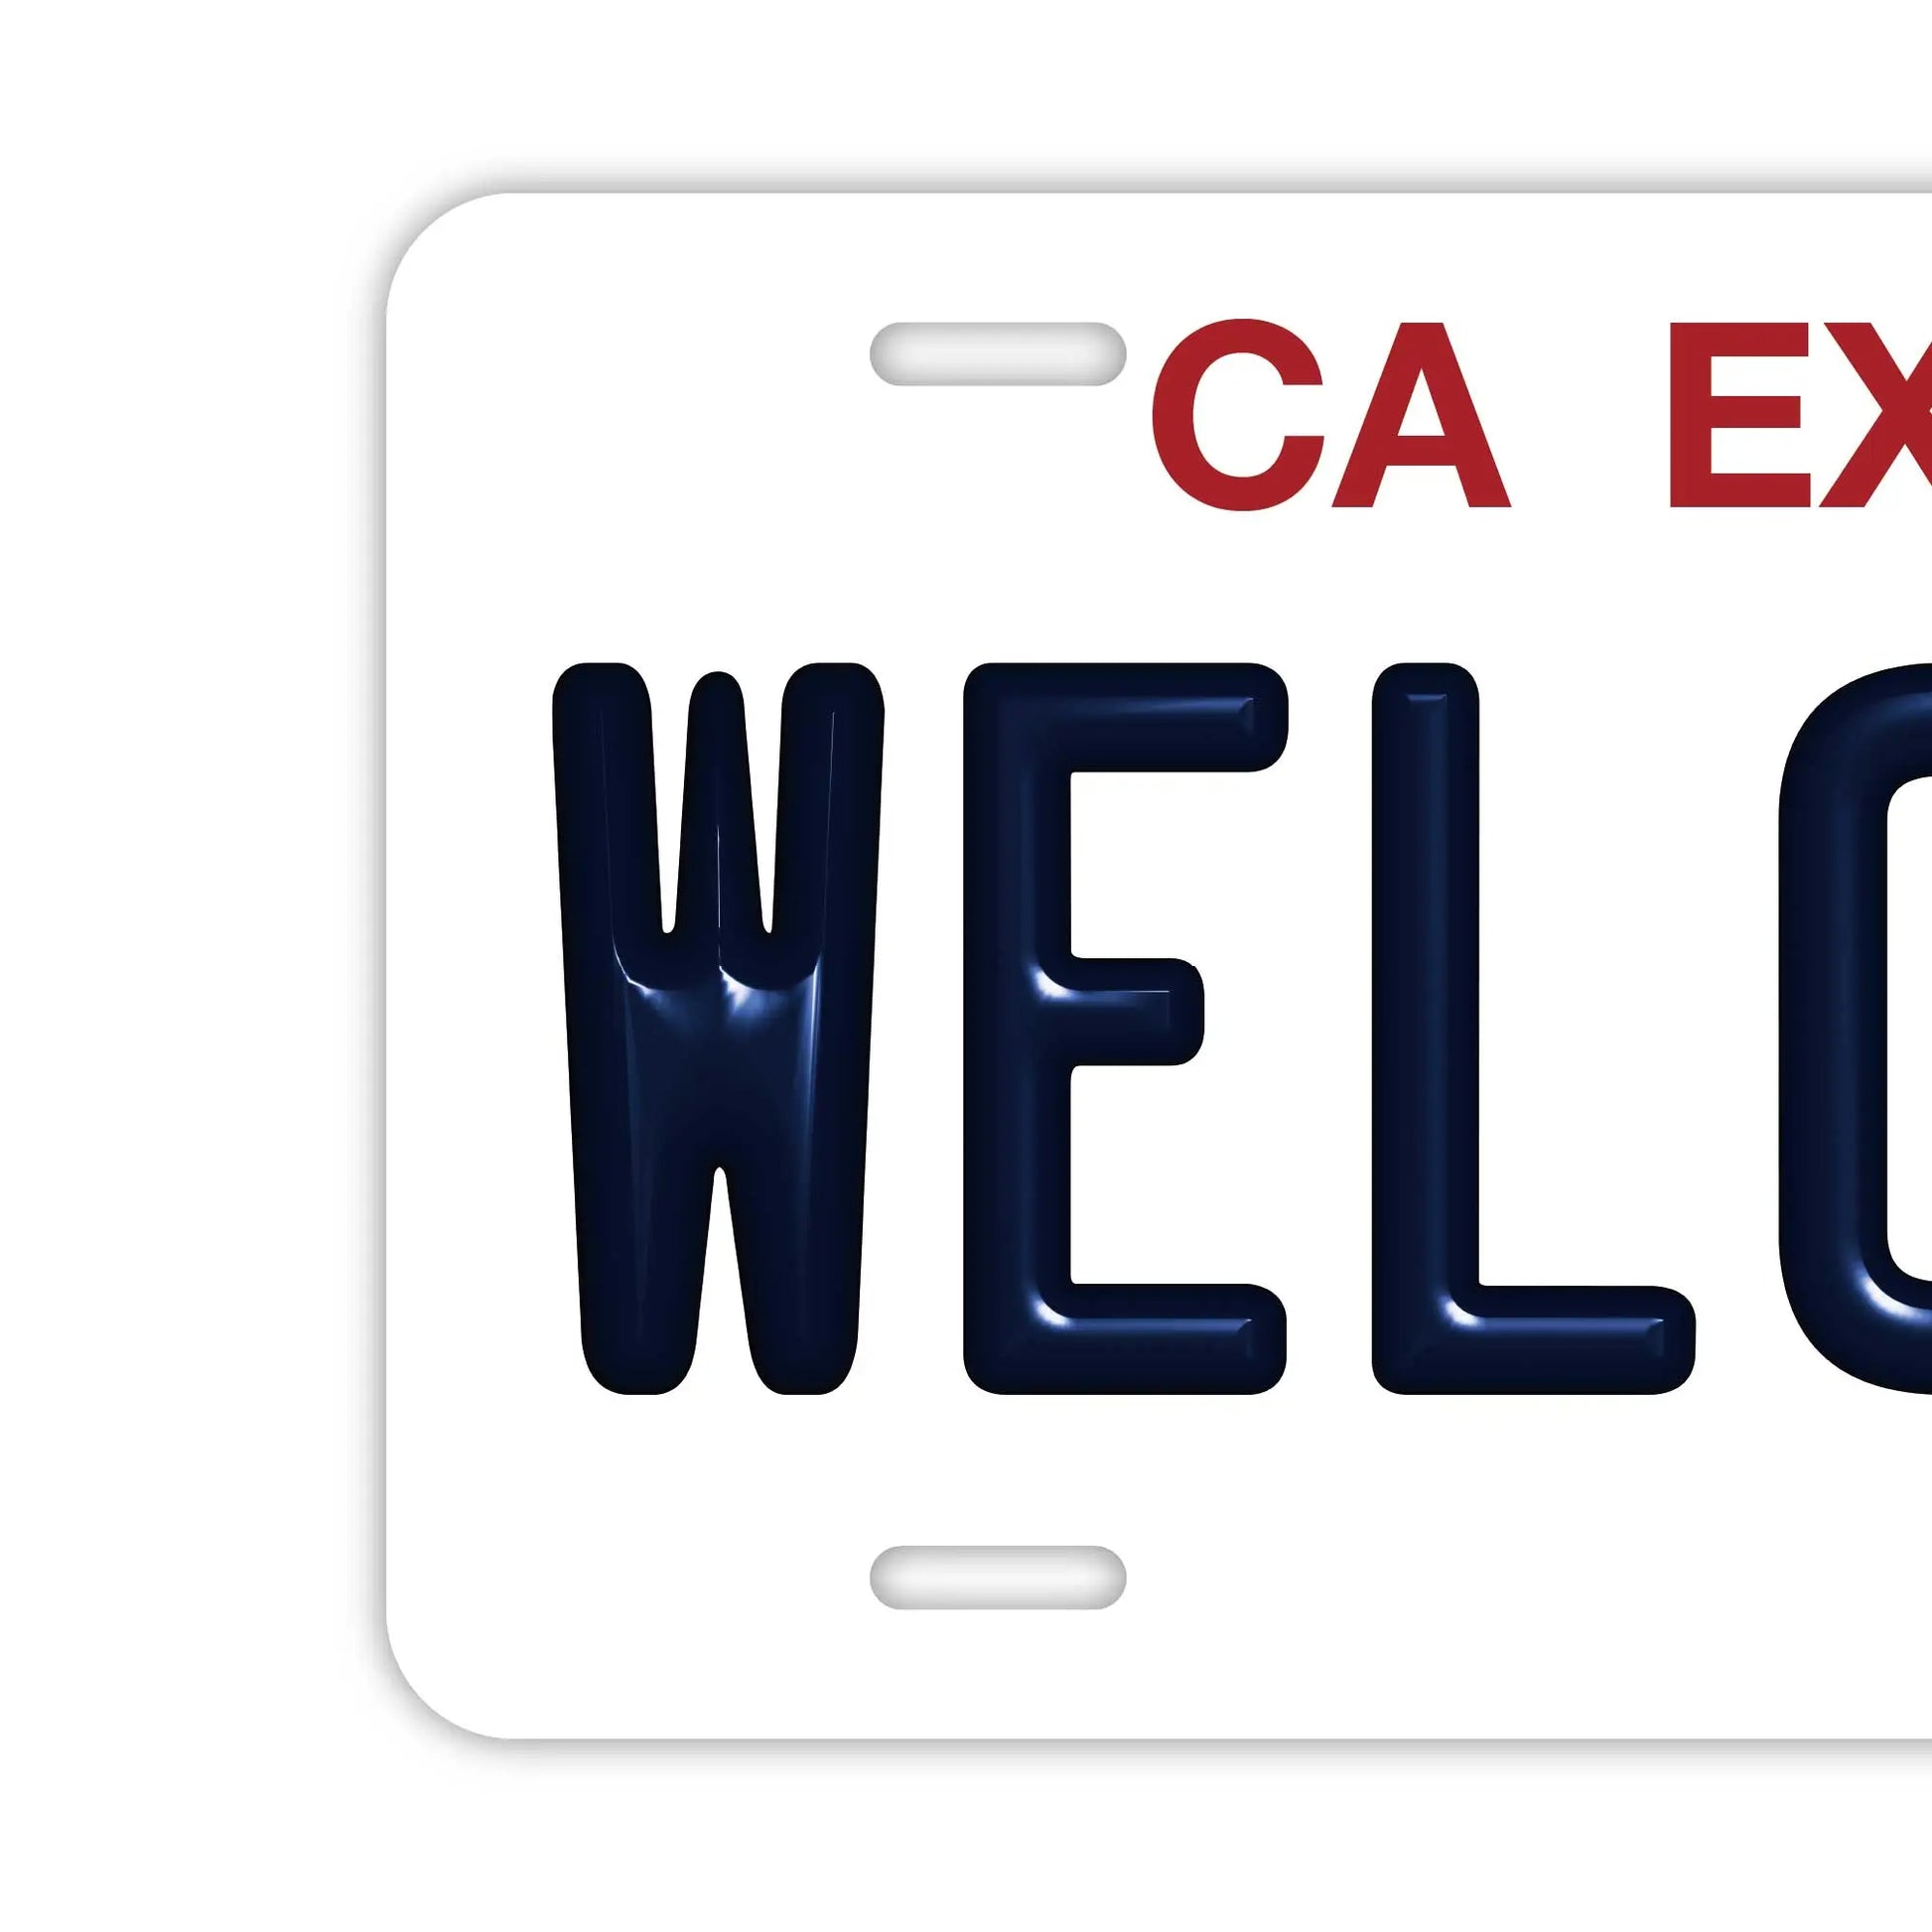 【ウェルカムボード看板】カリフォルニア州(公用車)・アメリカライセンスプレート型サイン・既製品 PL8HERO